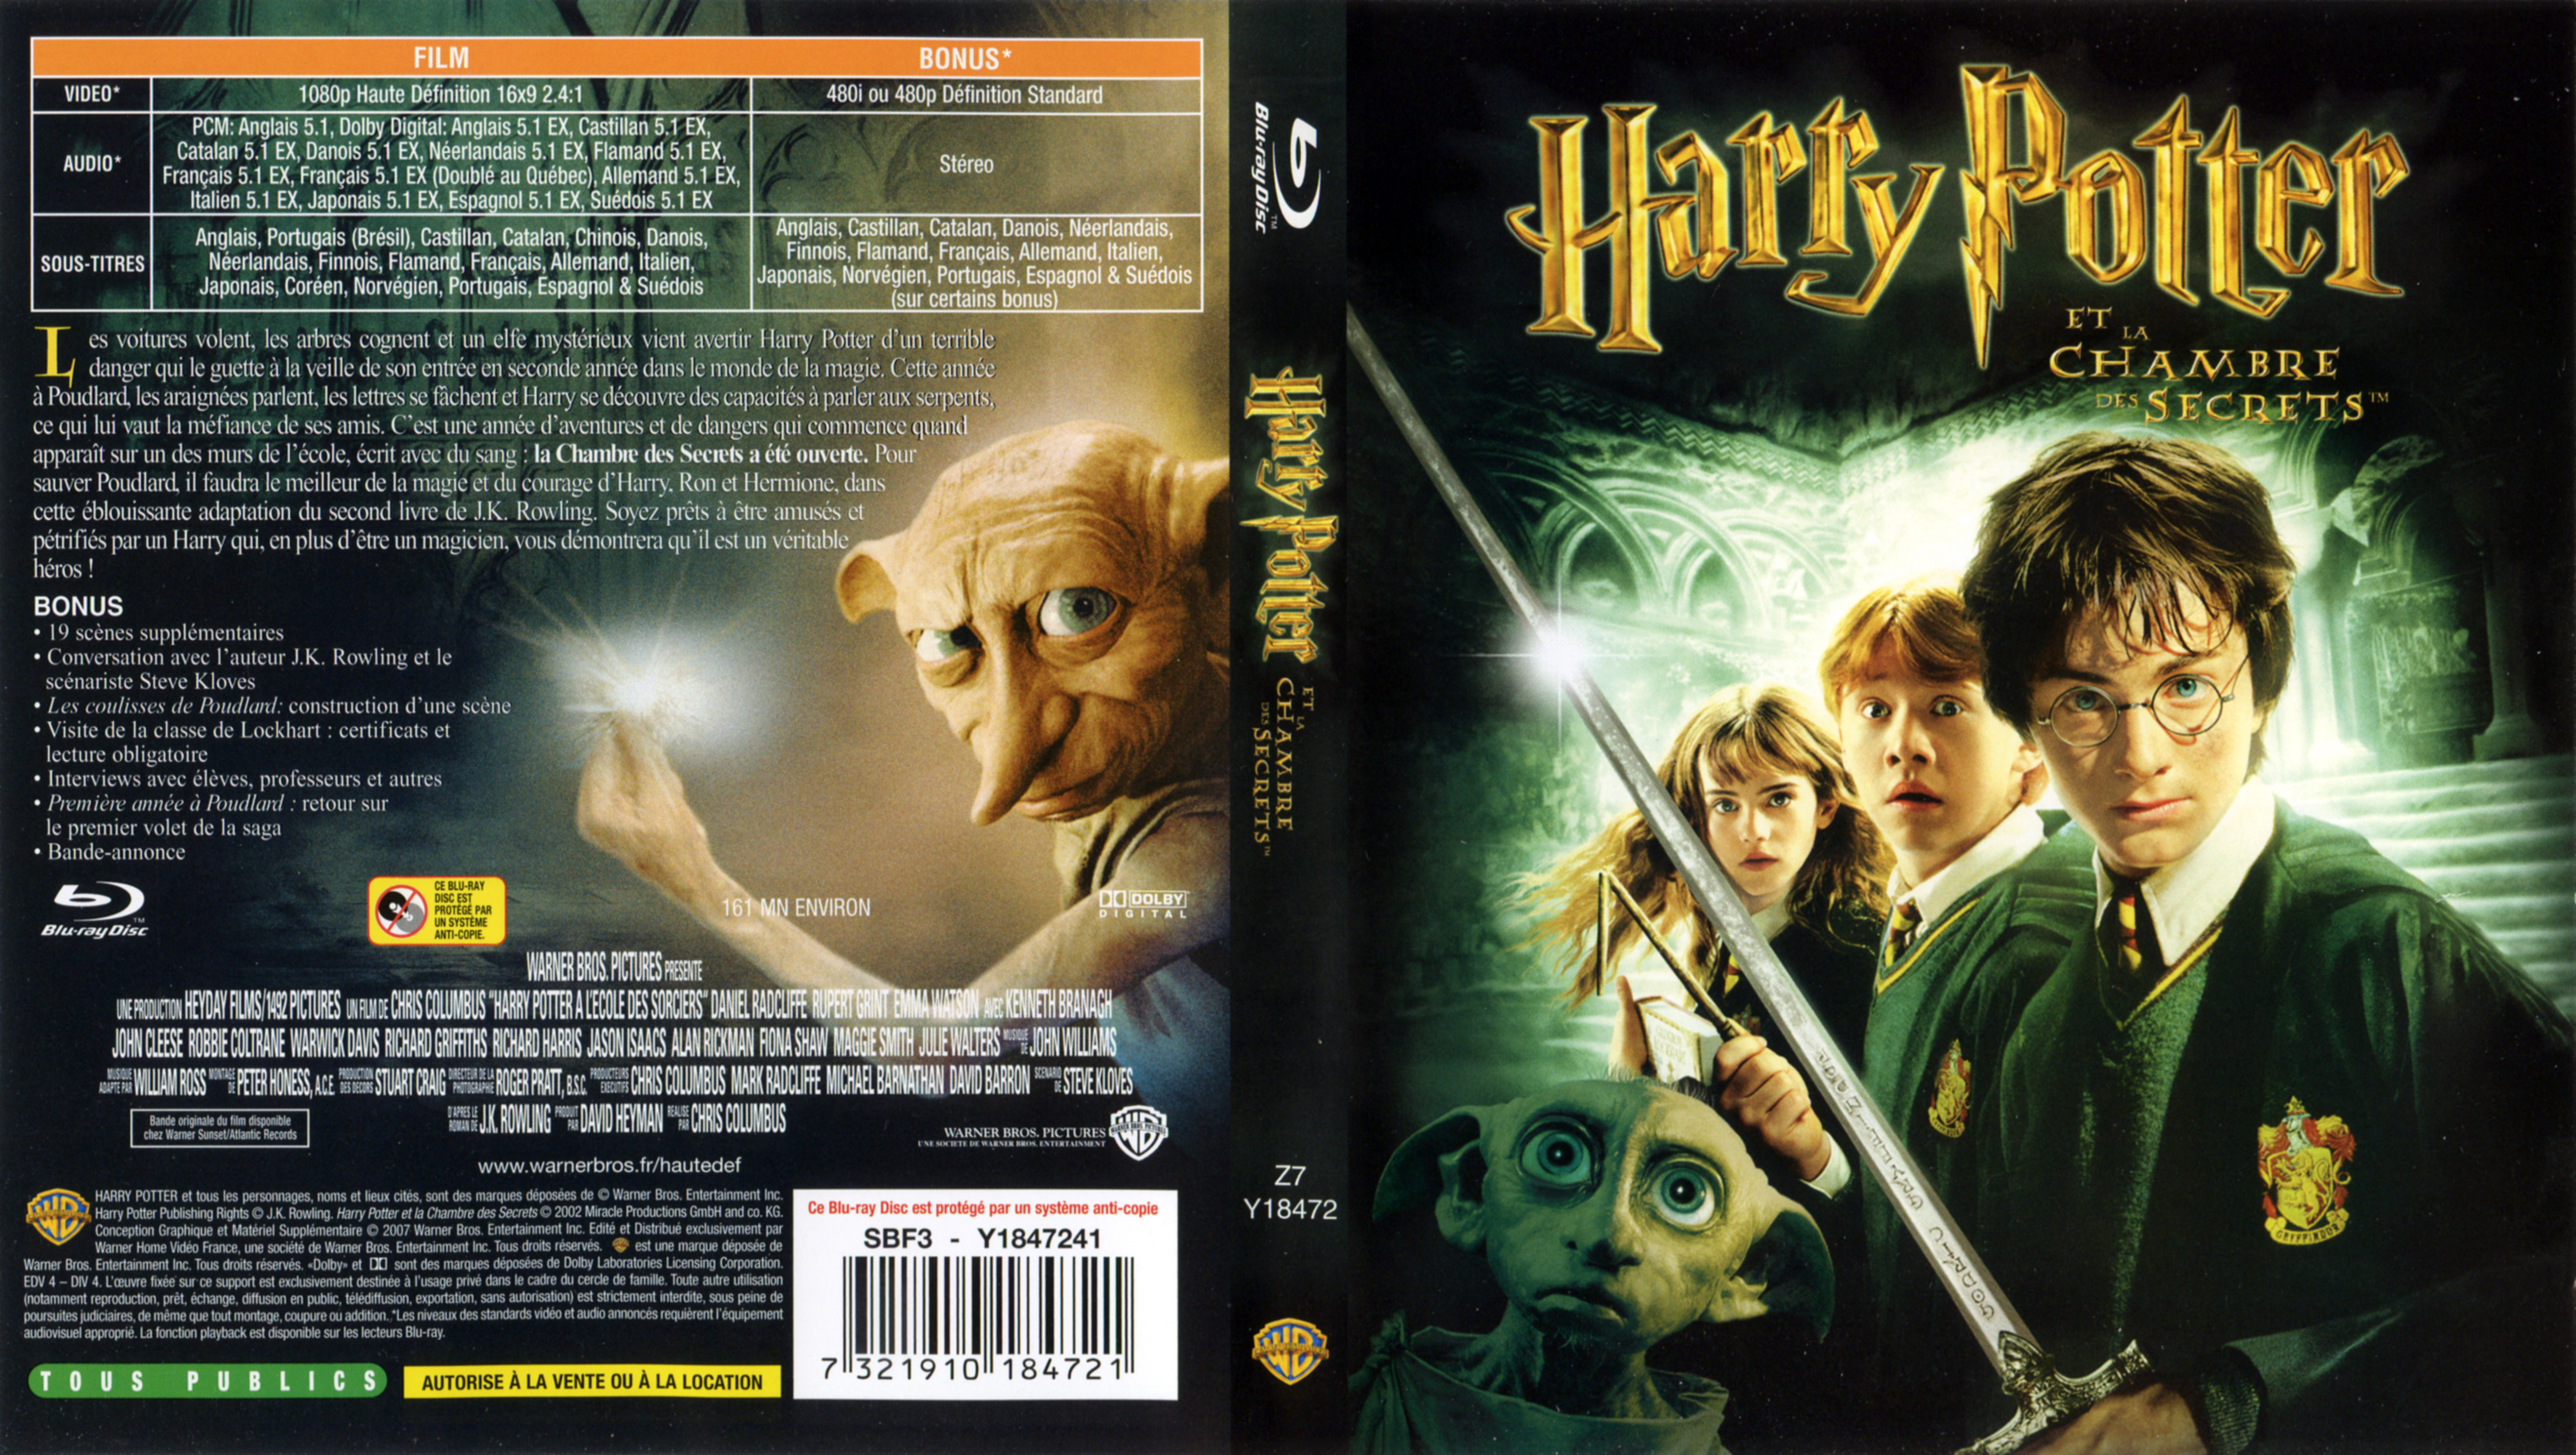 Jaquette Dvd De Harry Potter Et La Chambre Des Secrets Blu Ray Cinéma Passion